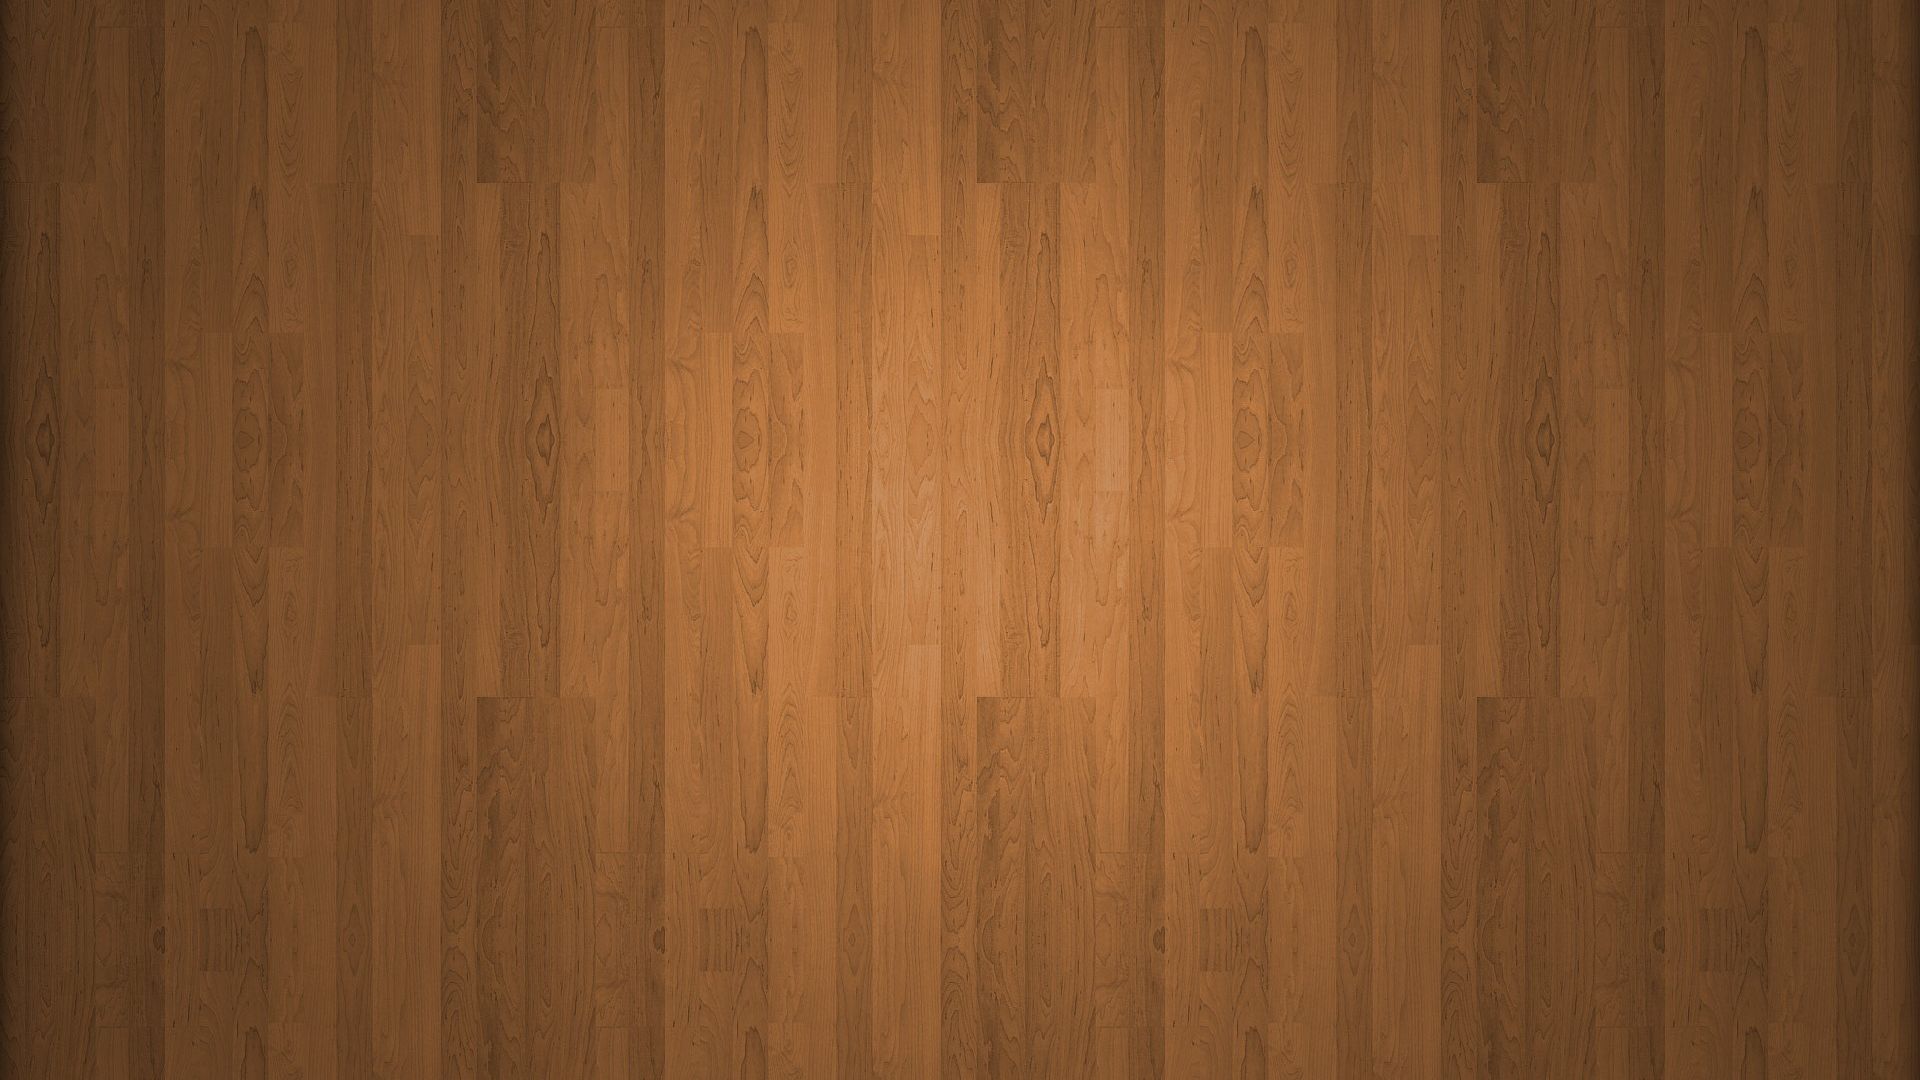 Muốn trang trí màn hình máy tính của bạn theo phong cách gỗ? Tải ngay hình nền gỗ 1920x1080, đinh, sàn gỗ, bề mặt... để chiêm ngưỡng vẻ đẹp tự nhiên của gỗ. Hình ảnh đầy tinh tế và chuyên nghiệp sẽ khiến bạn không thể rời mắt.